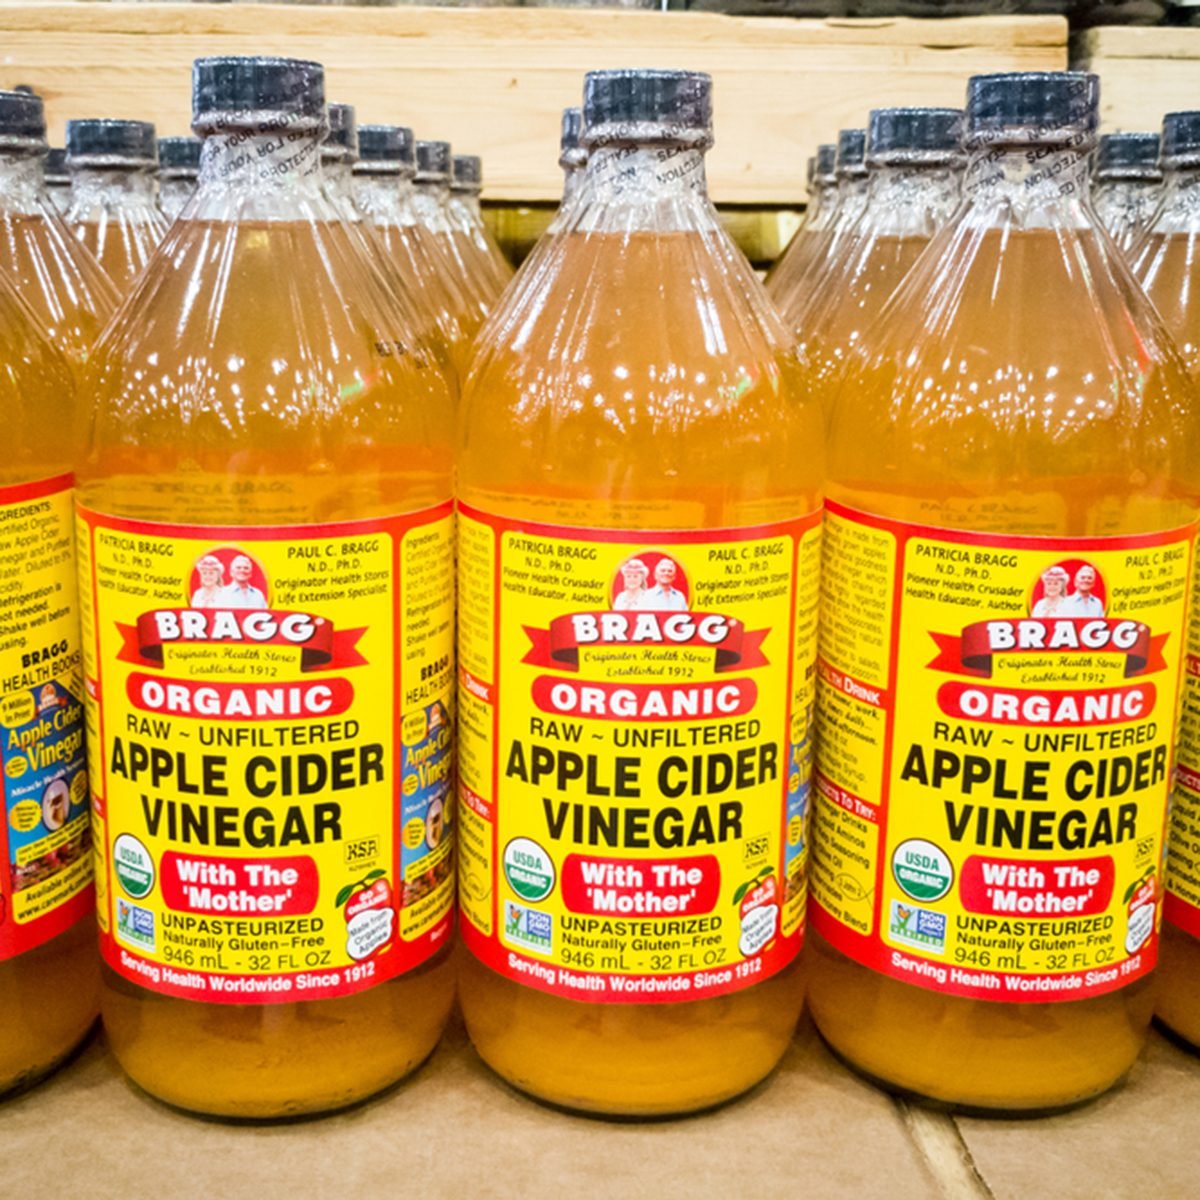 Benefit of apple cider vinegar